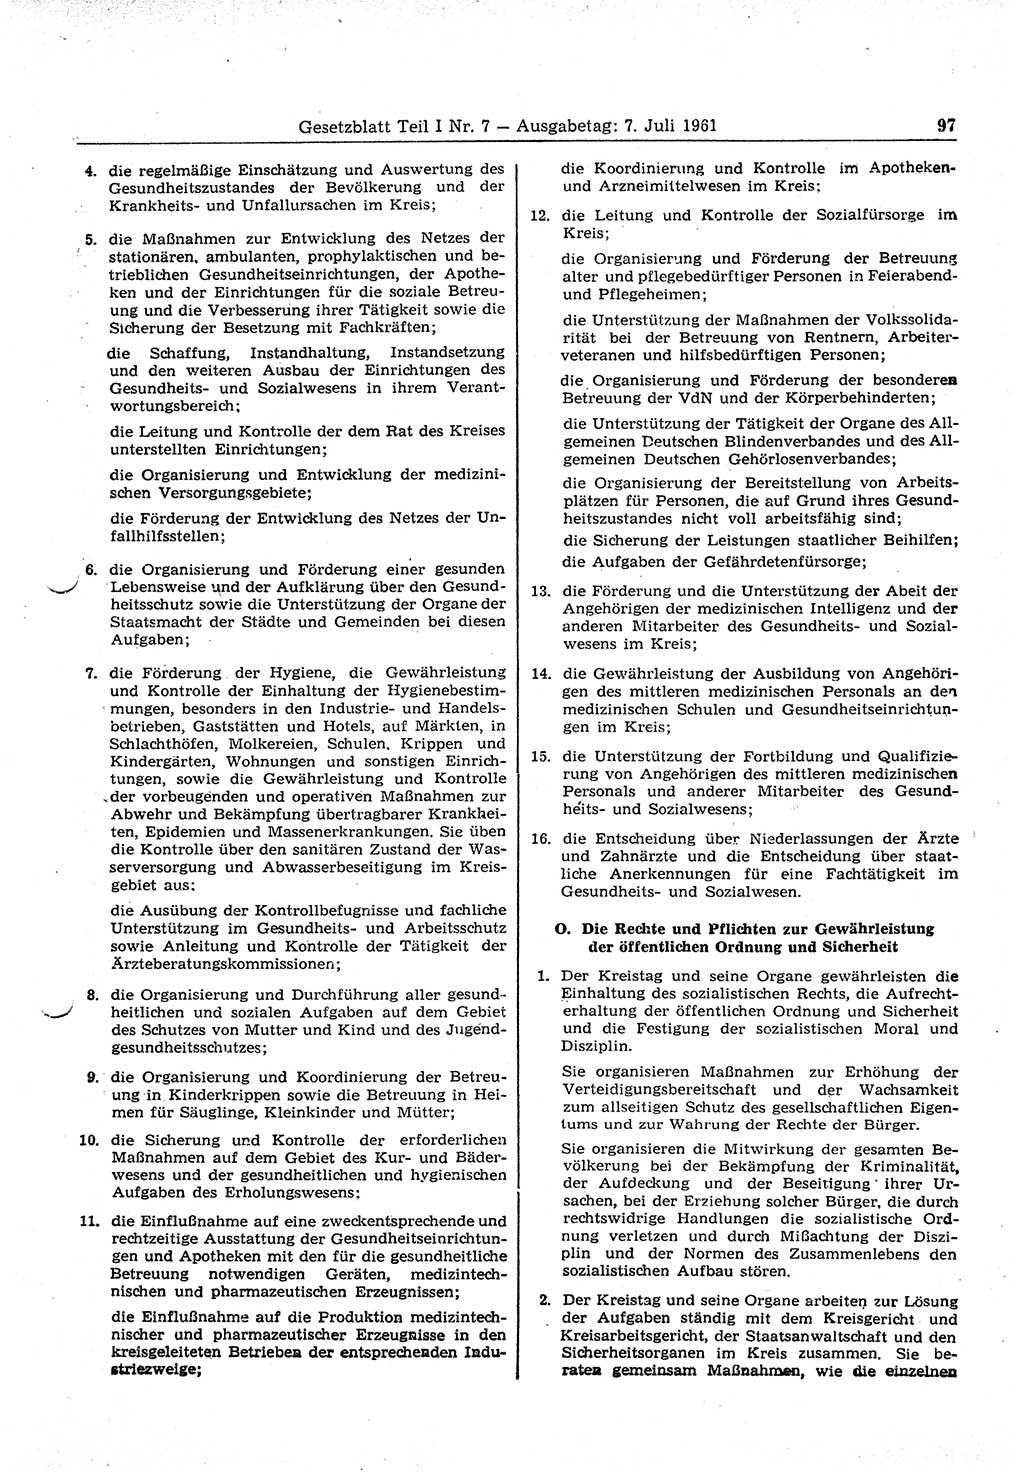 Gesetzblatt (GBl.) der Deutschen Demokratischen Republik (DDR) Teil Ⅰ 1961, Seite 97 (GBl. DDR Ⅰ 1961, S. 97)